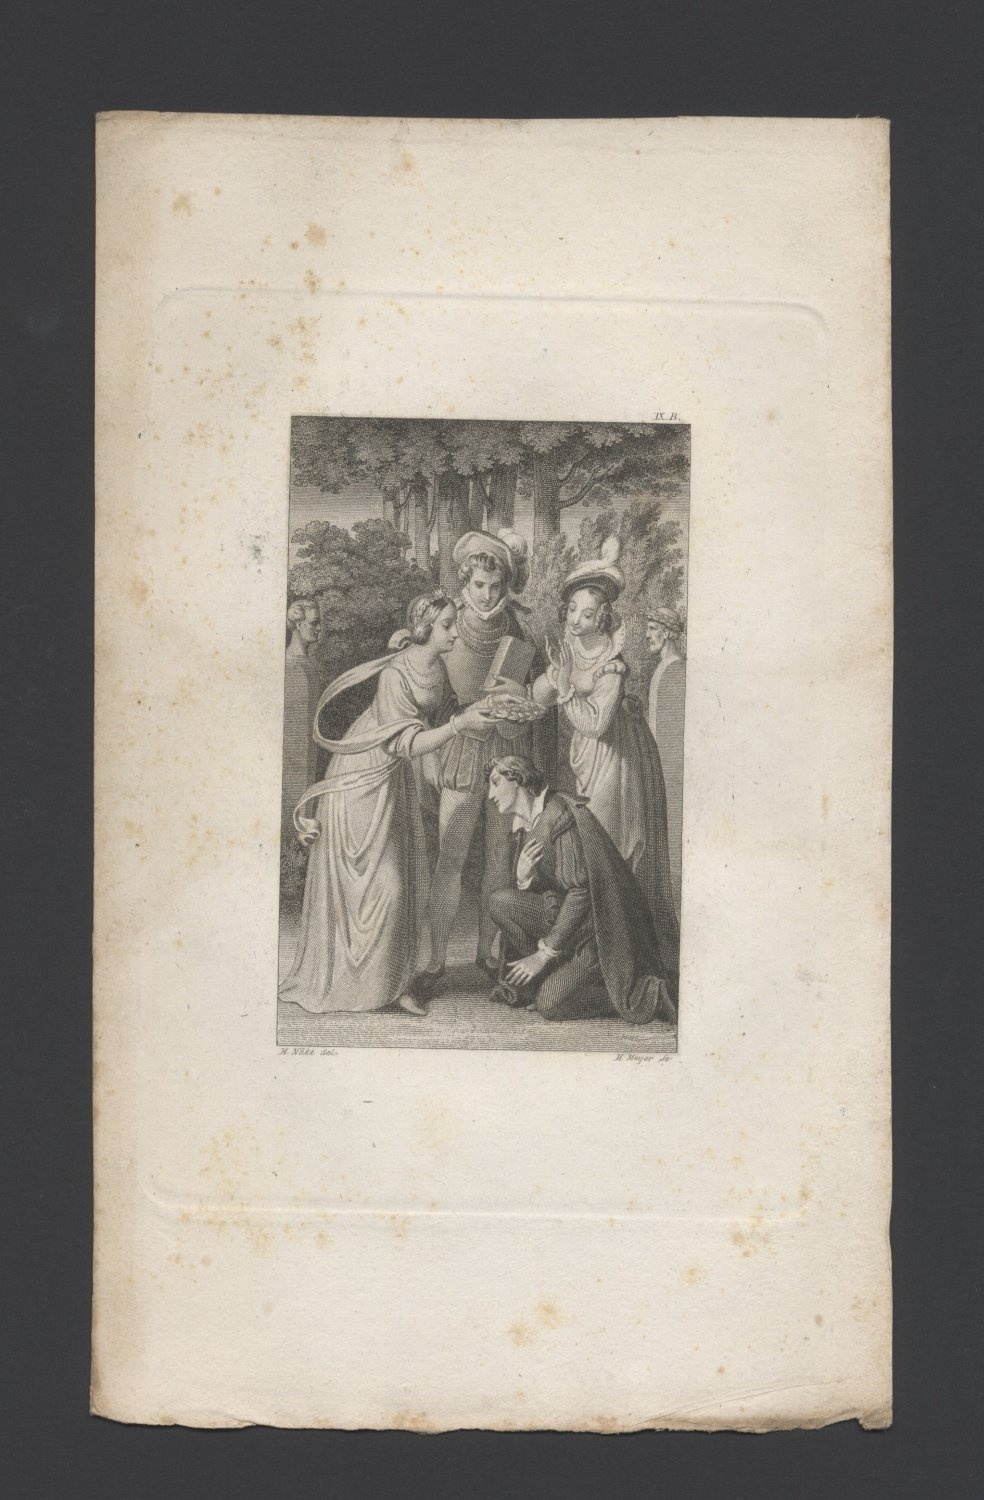 Tasso wird von den Frauen bekränzt (Freies Deutsches Hochstift / Frankfurter Goethe-Museum CC BY-NC-SA)